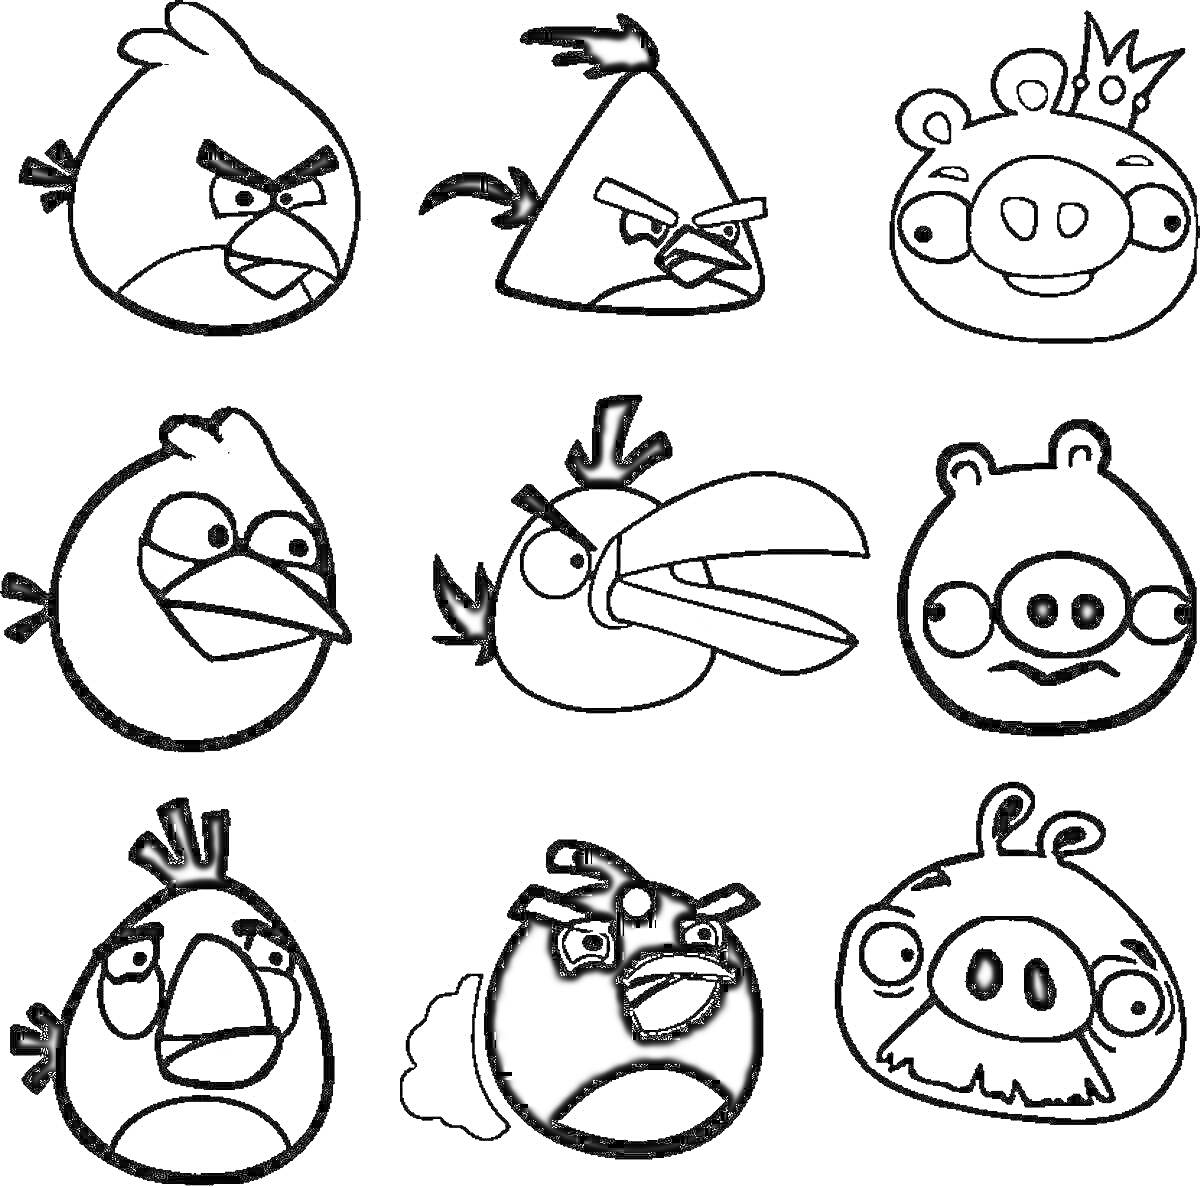 Раскраска Раскраска стикеров для детей с персонажами Angry Birds, включая разных птиц и свиней